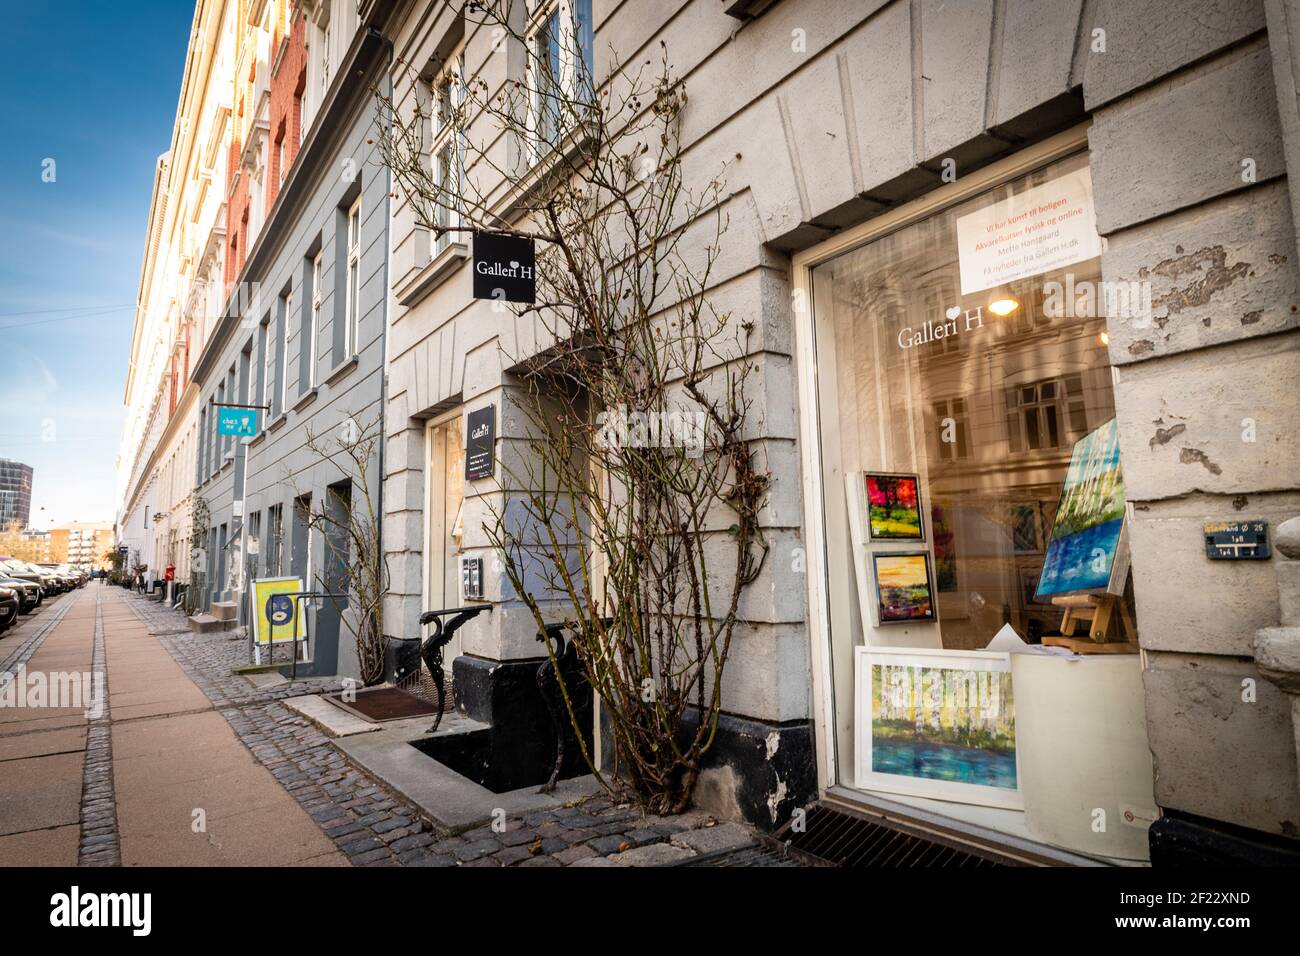 Rørholmsgade est une rue de Copenhague qui est principalement occupée par des artistes et des galeries d'art. Banque D'Images